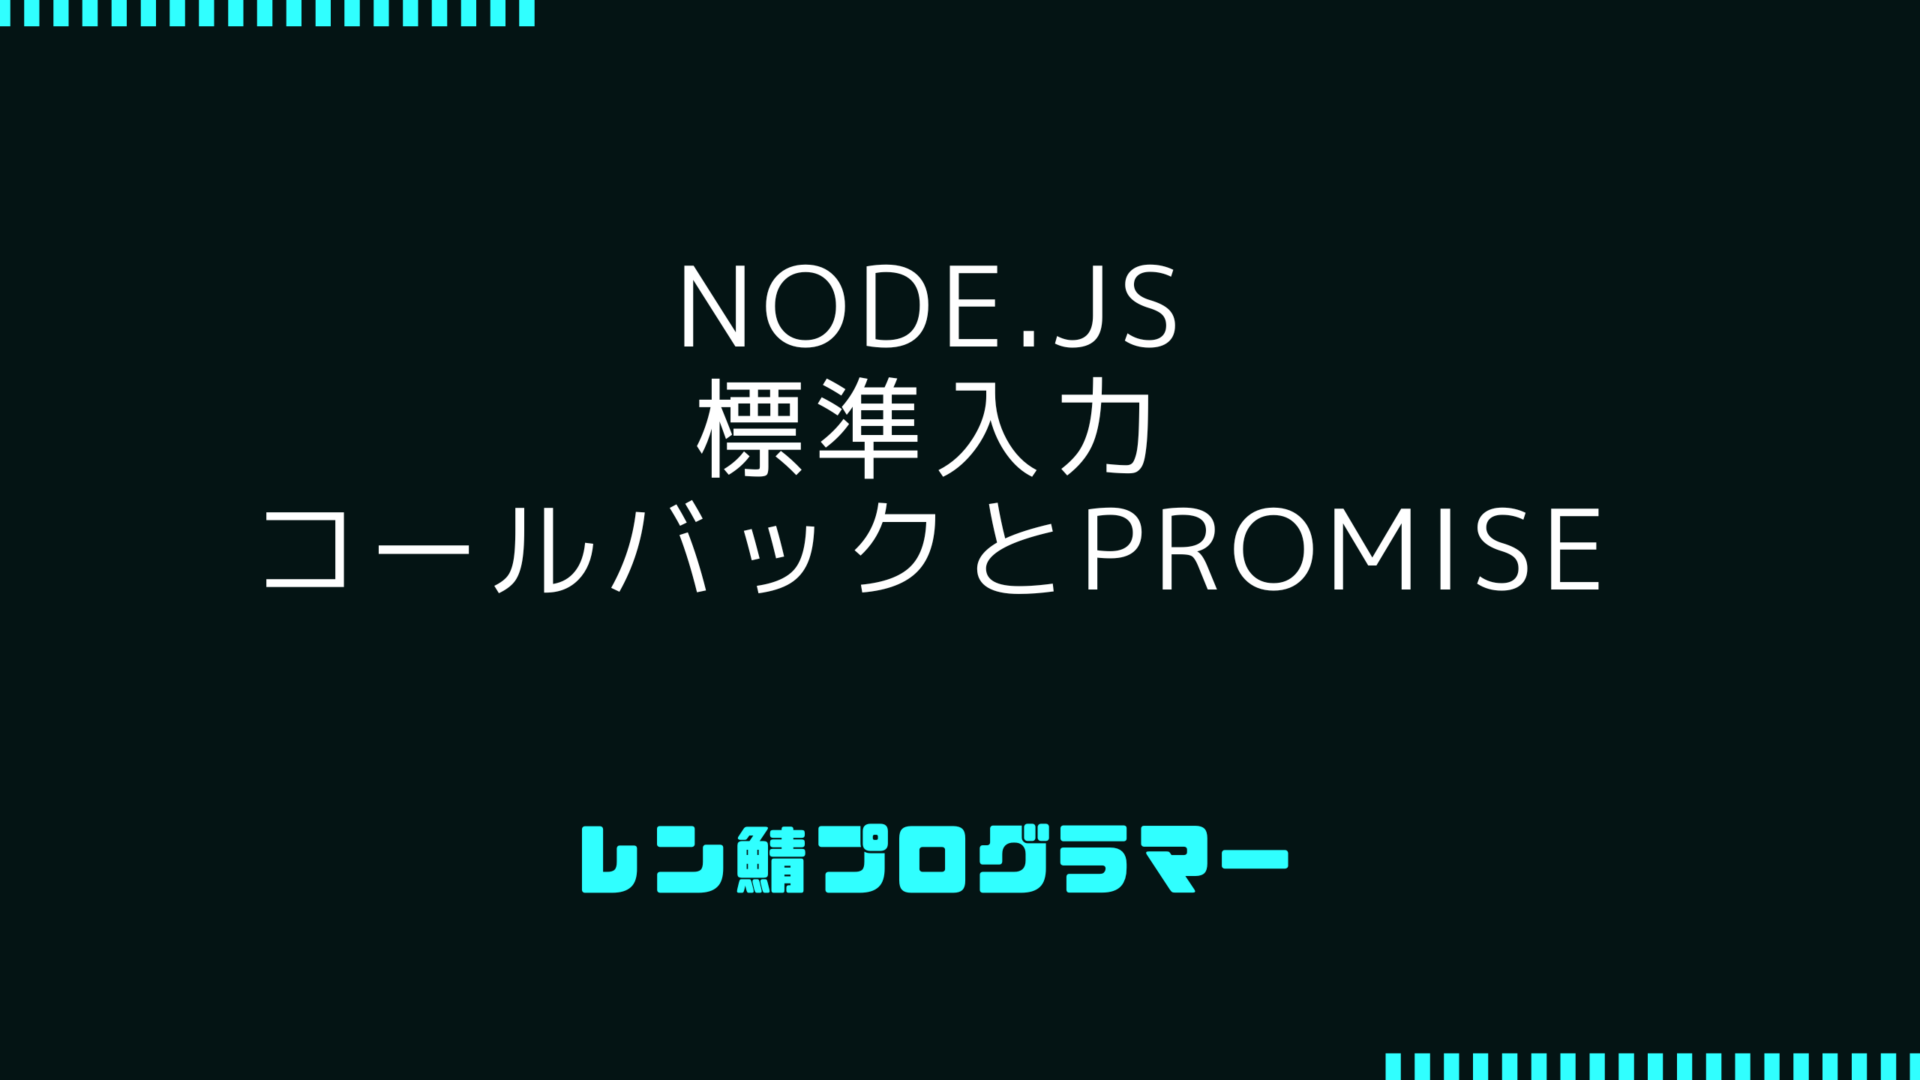 Node.jsで標準入力を扱う方法、コールバックとPromiseの比較